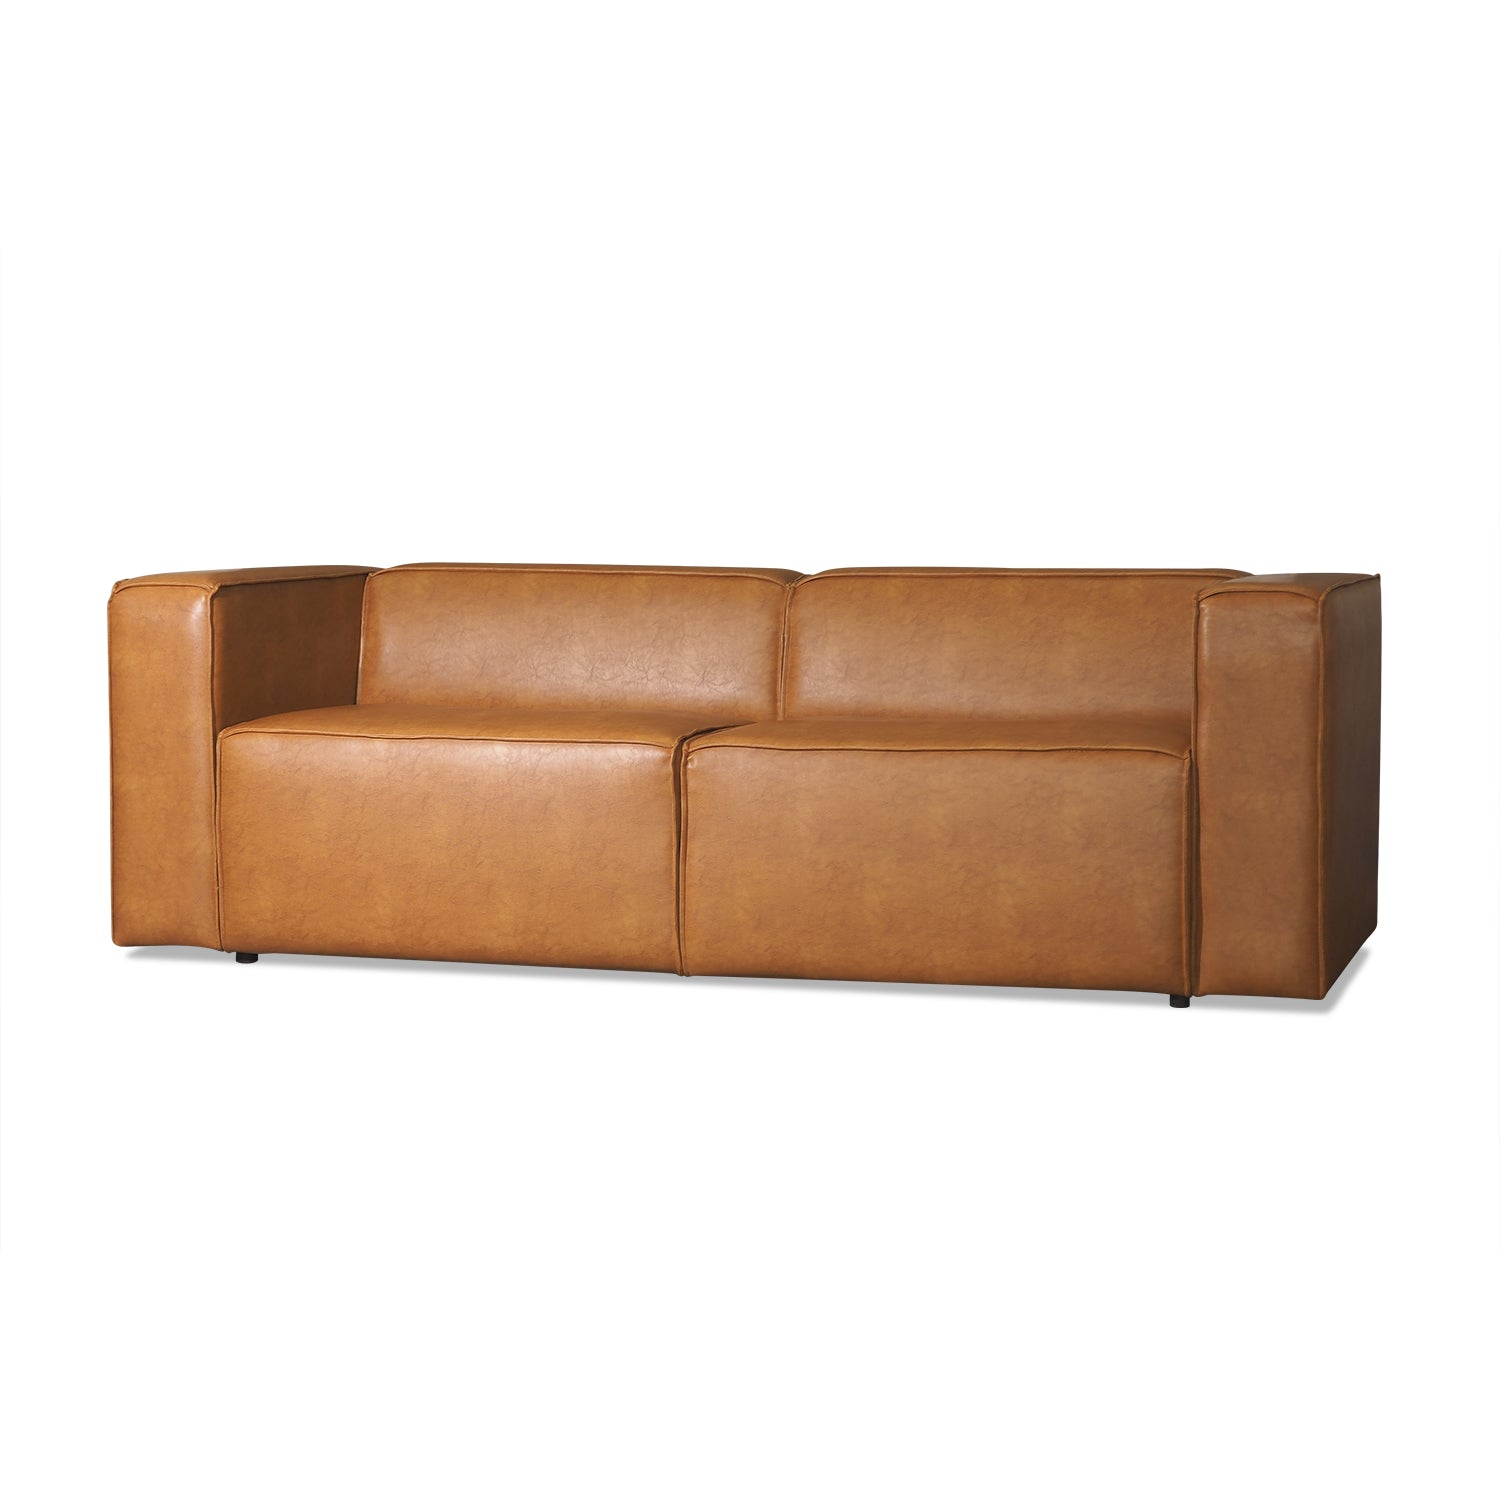 Marroni Sofa 3 Seater